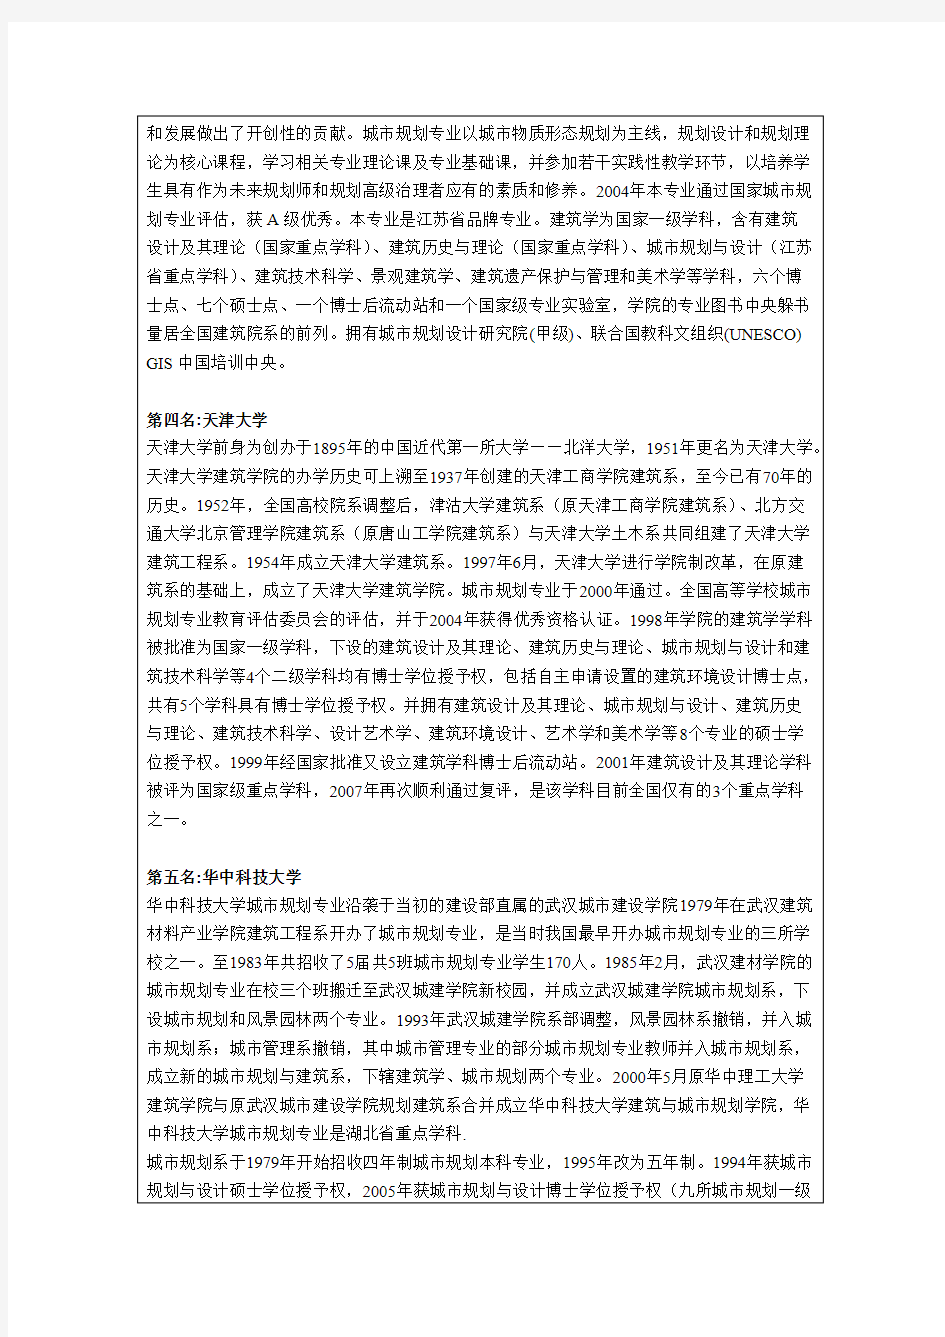 中国高校城市规划专业研究生培养综合排名(2011最新版)